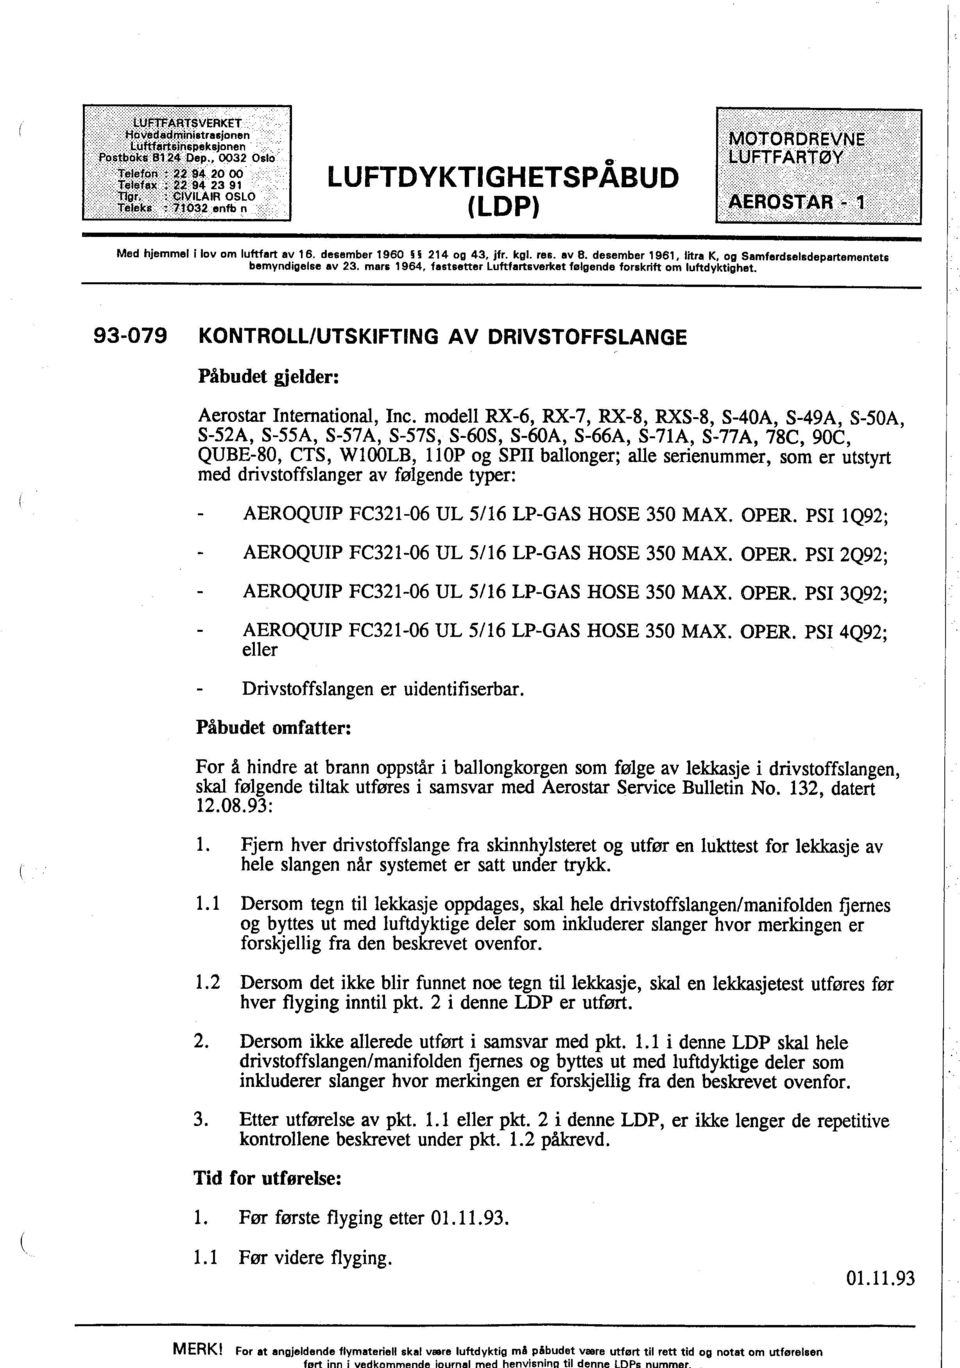 desember 1960 214 og 43, jfr. kgl. res. av 8. desember 1961, litra K. og Samferdselsdepartementets bemyndigelse av 23. mars 1964, fastsetter Luftfartsverket følgende forskrift om luftdyktîghet.